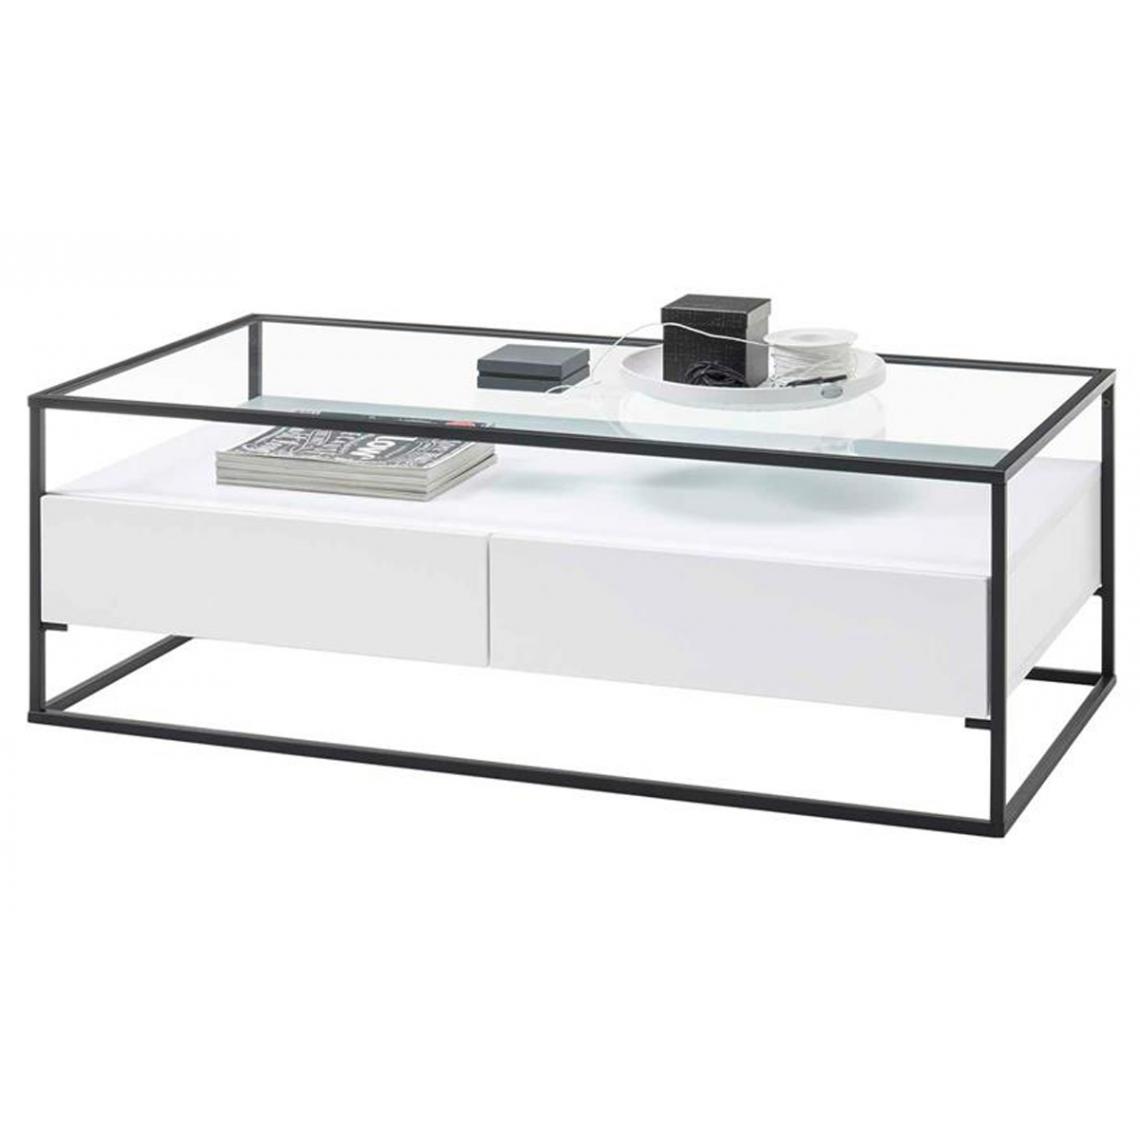 Pegane - Table basse avec rangements en bois et métal coloris blanc mat - L.120 x H.40 x P.60 cm - Tables basses